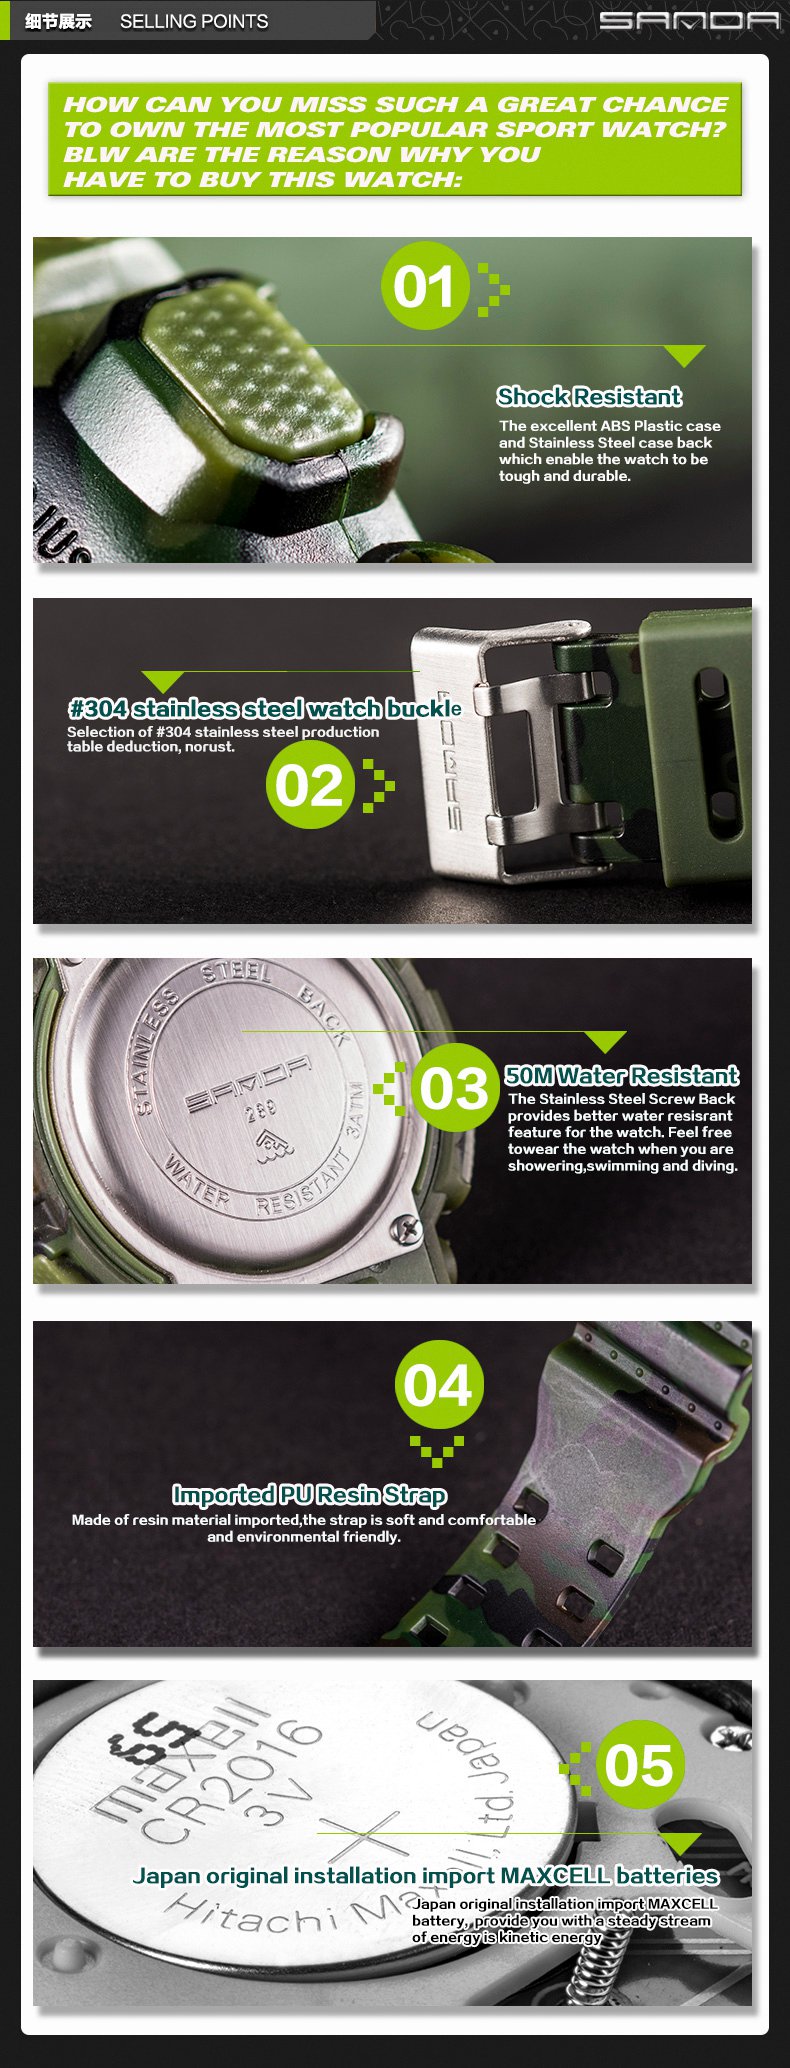 SANDA-289-Digital-Watch-Camouflage-Style-Military-Waterproof-Men-Sport-Wrist-Watch-1252020